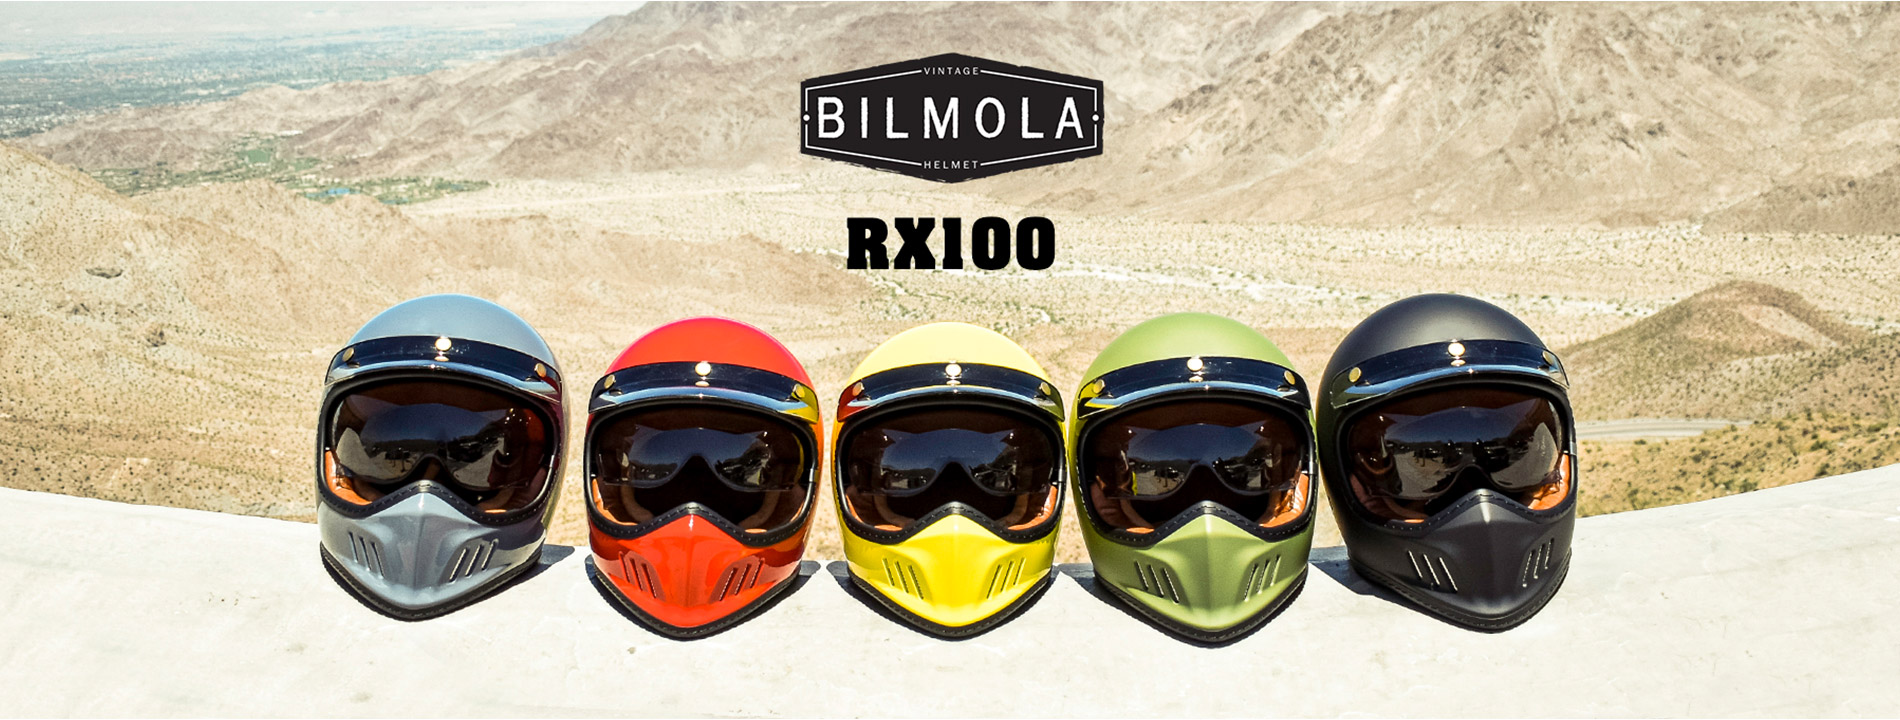 หมวกกันน็อกวิบาก วินเทจ Bilmola รุ่น RX100 ติดบูลทูธได้ ถอดซักได้ มีแว่นกันแดด Vintage Off Road Helmet สายคลูๆ